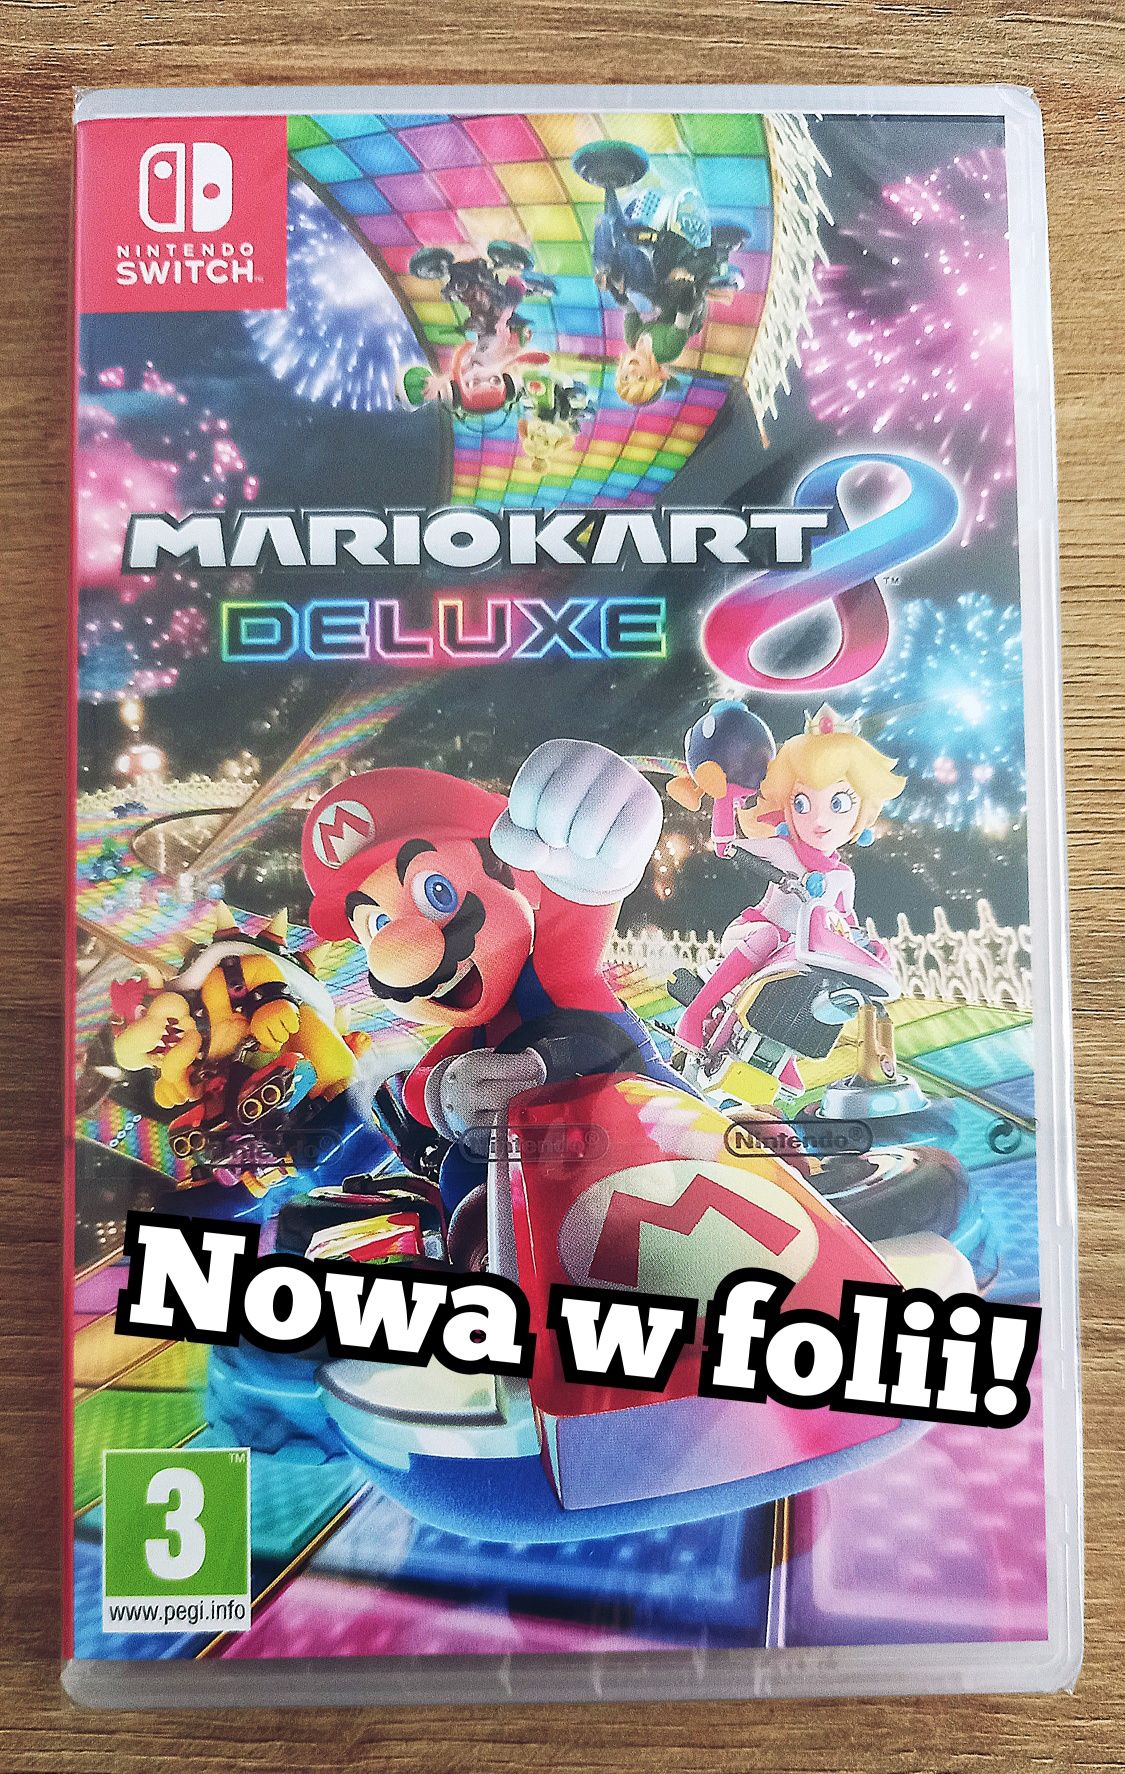 Mario Kart Deluxe 8 Nintendo Switch /nowa w folii! Sklep Chorzów